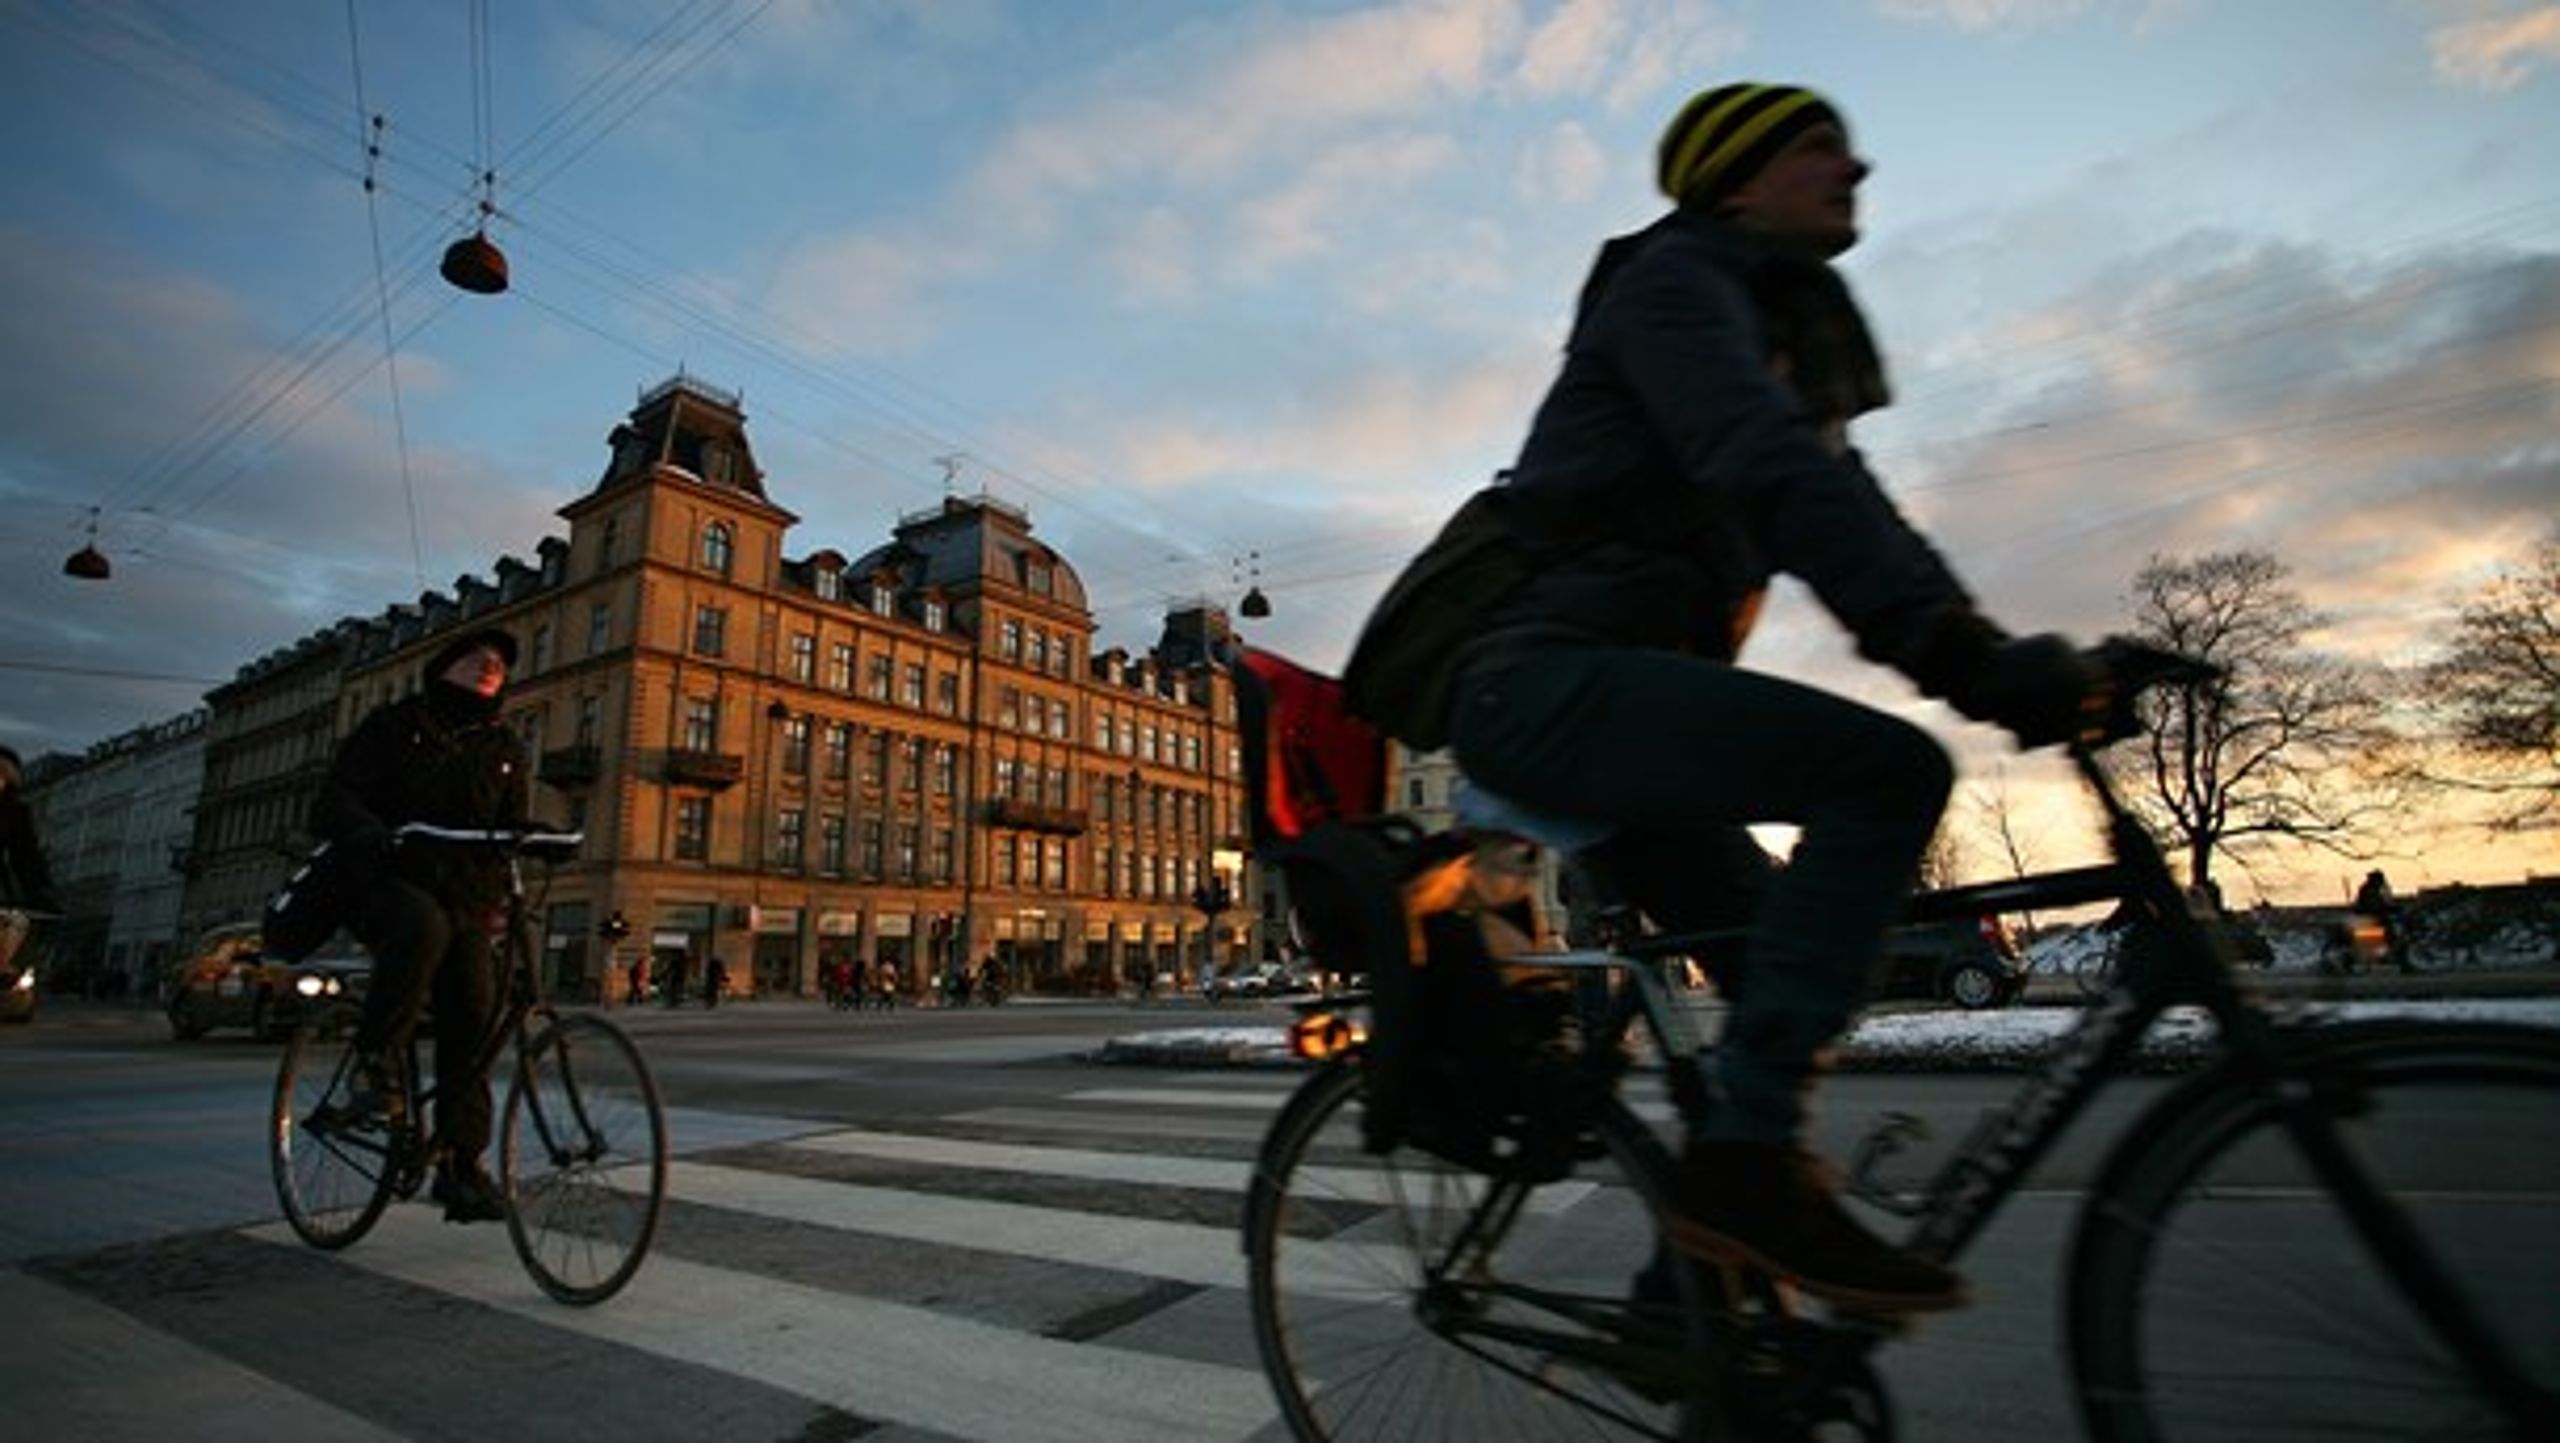 Der bør sættes midler af til en national kortlægning af cykelinfrastrukturen, skriver Heino Knudsen (S) og Klaus Bondam.